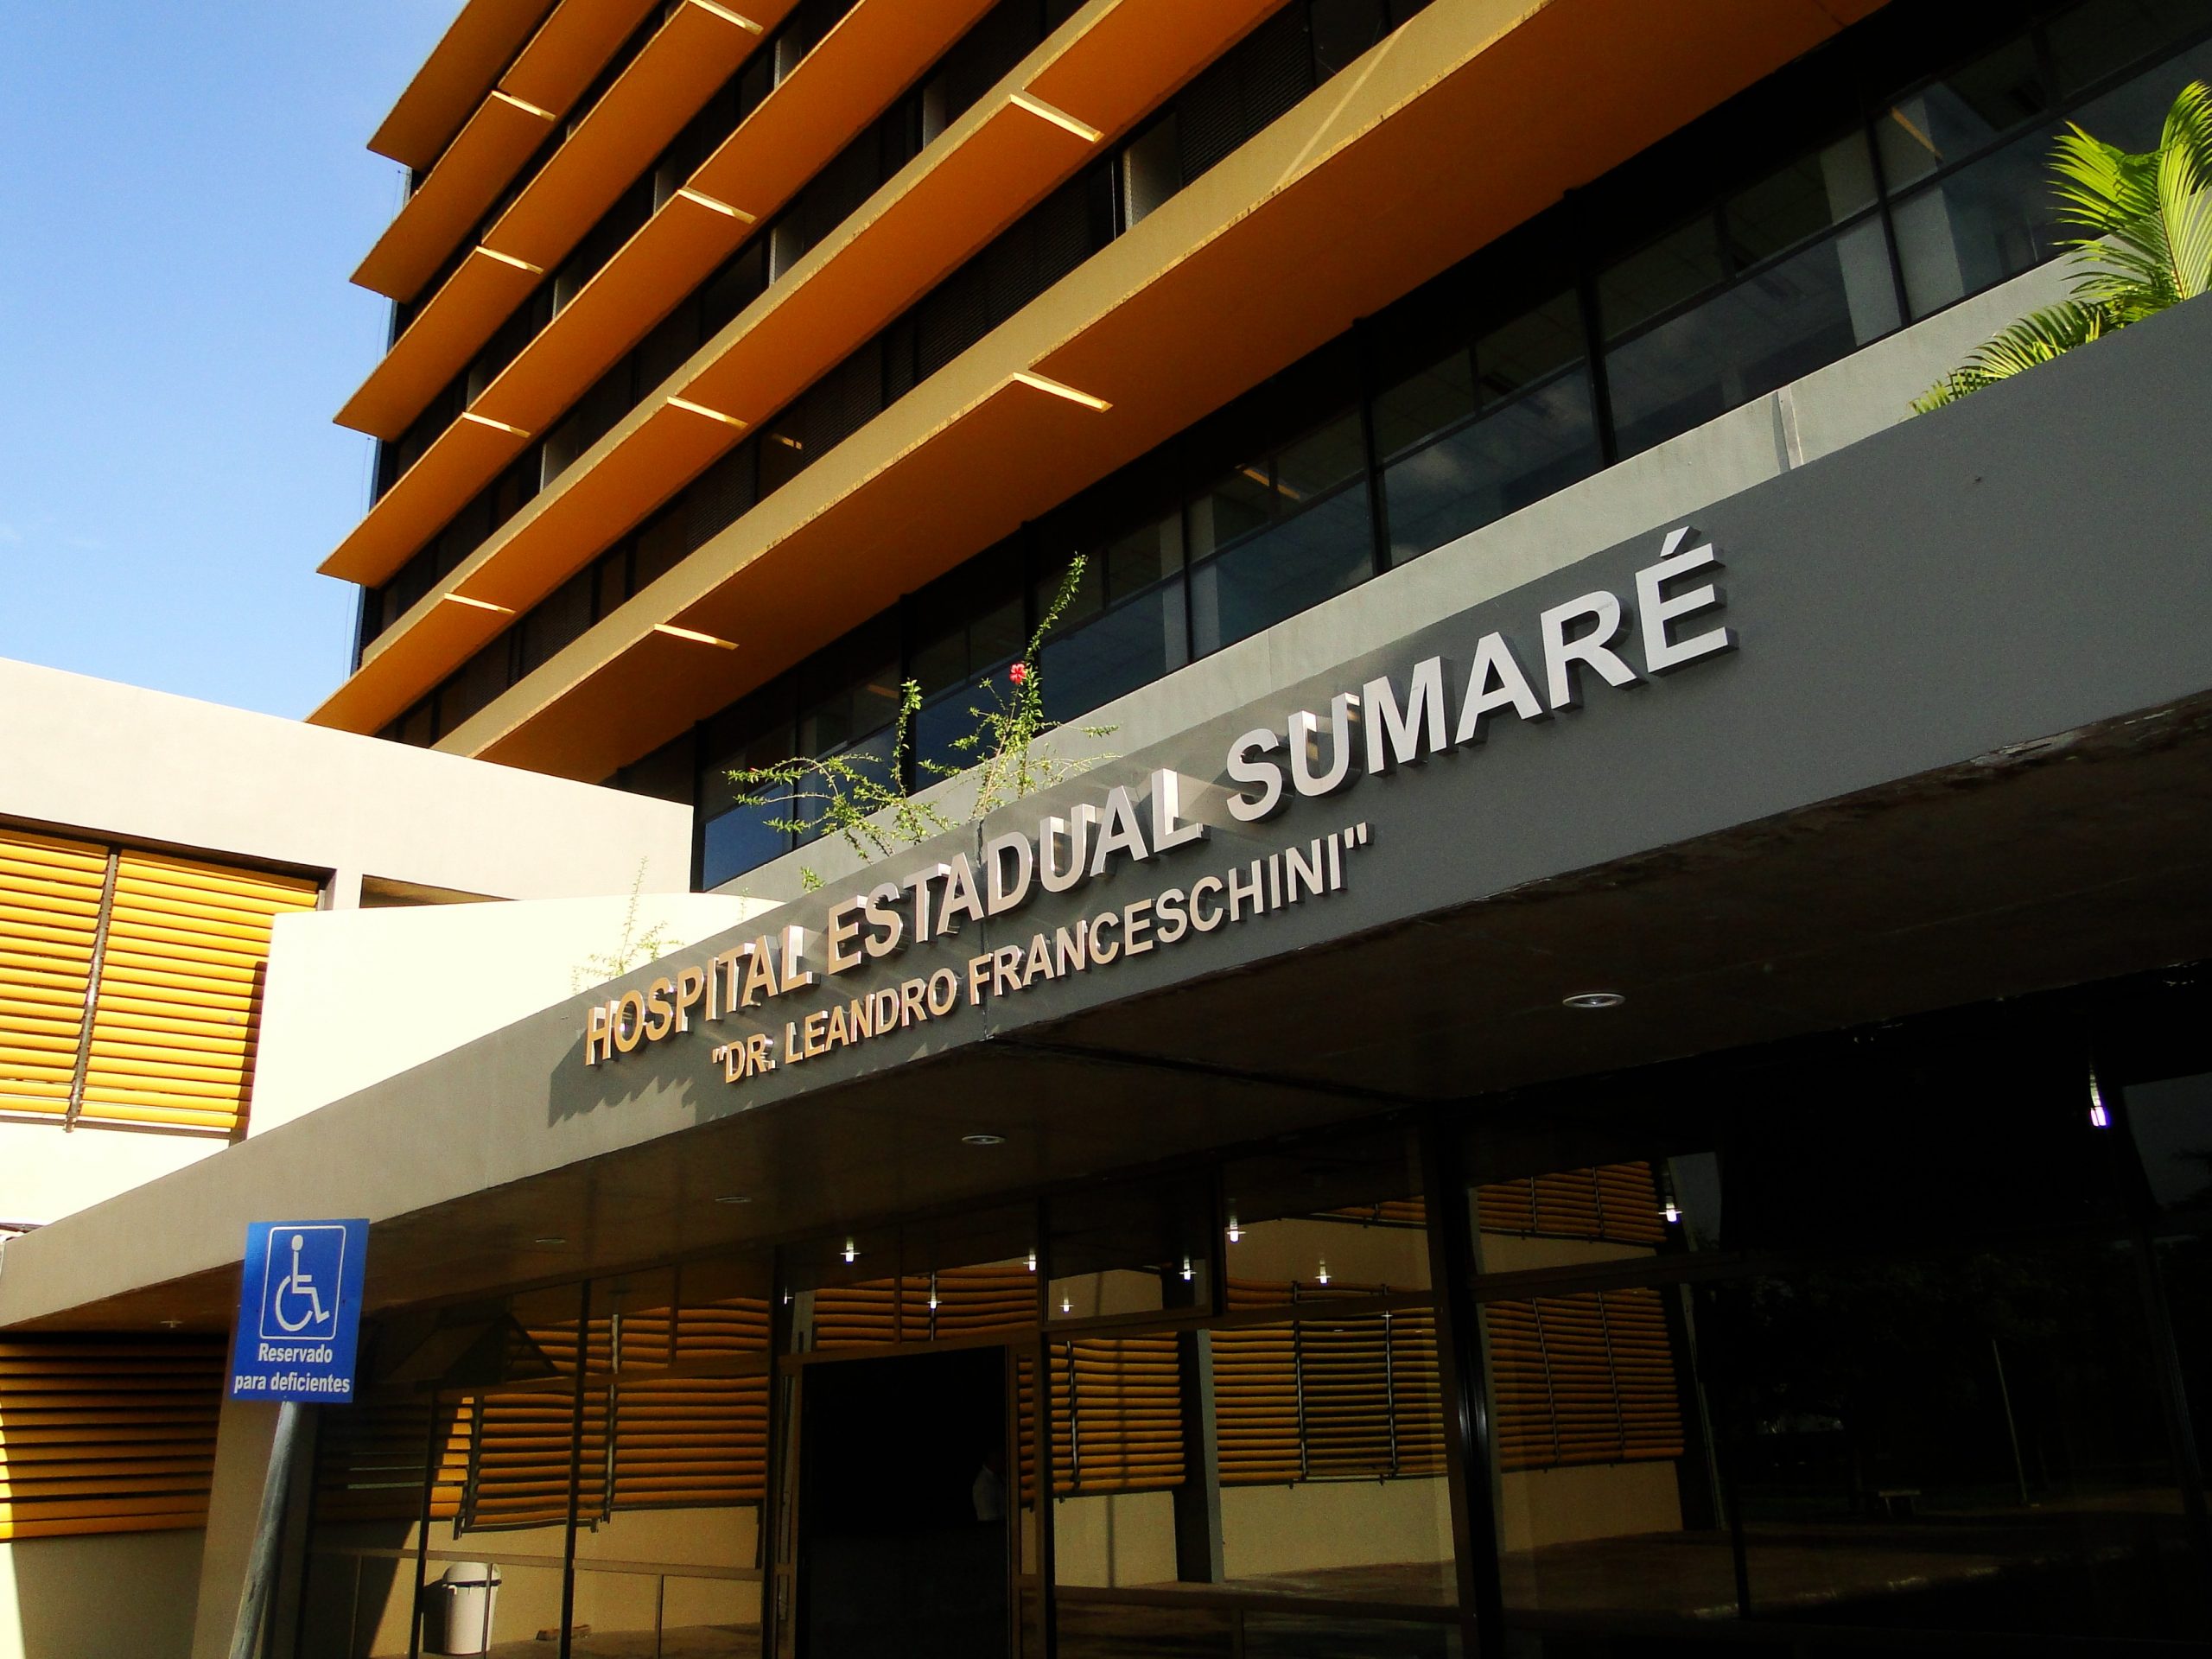 Foto: Divulgação / Hospital Estadual Sumaré